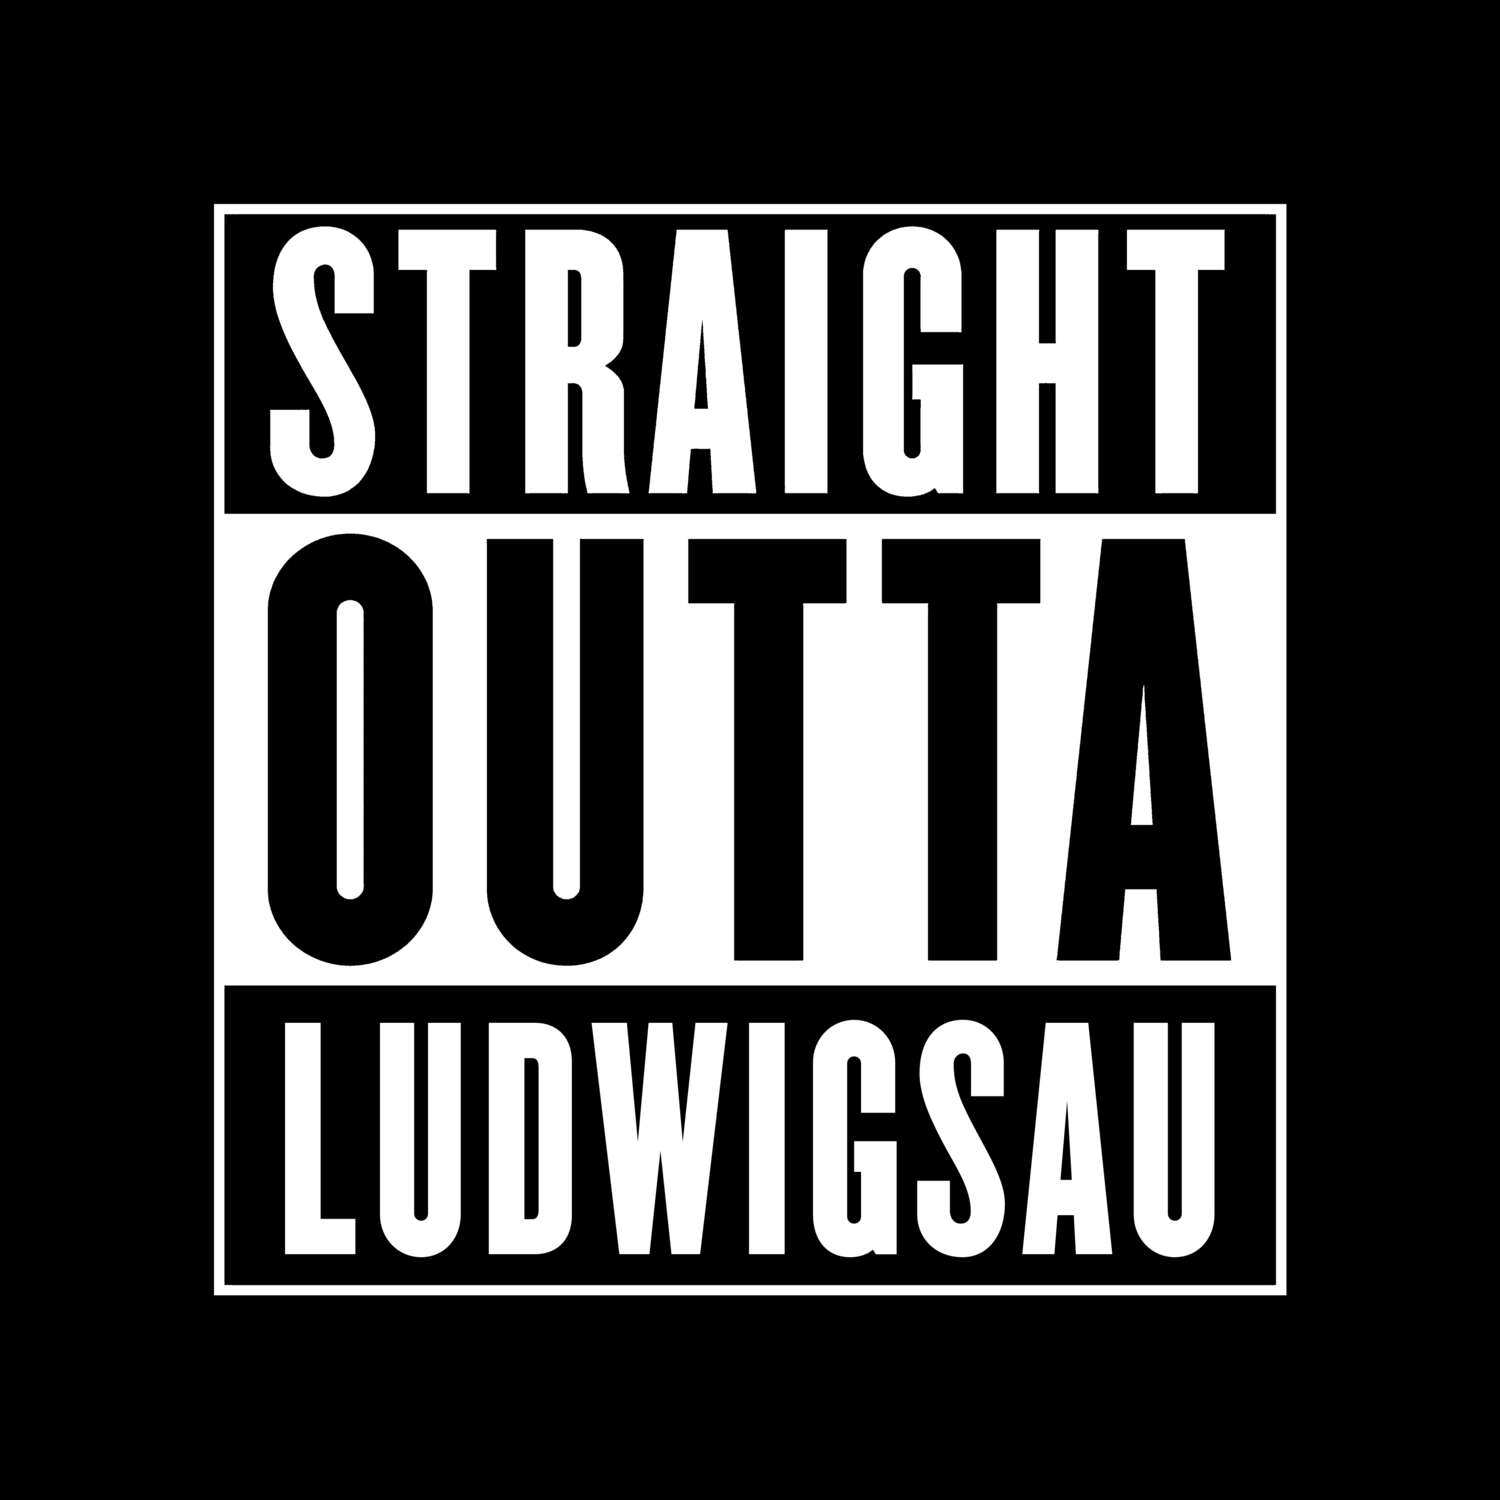 Ludwigsau T-Shirt »Straight Outta«